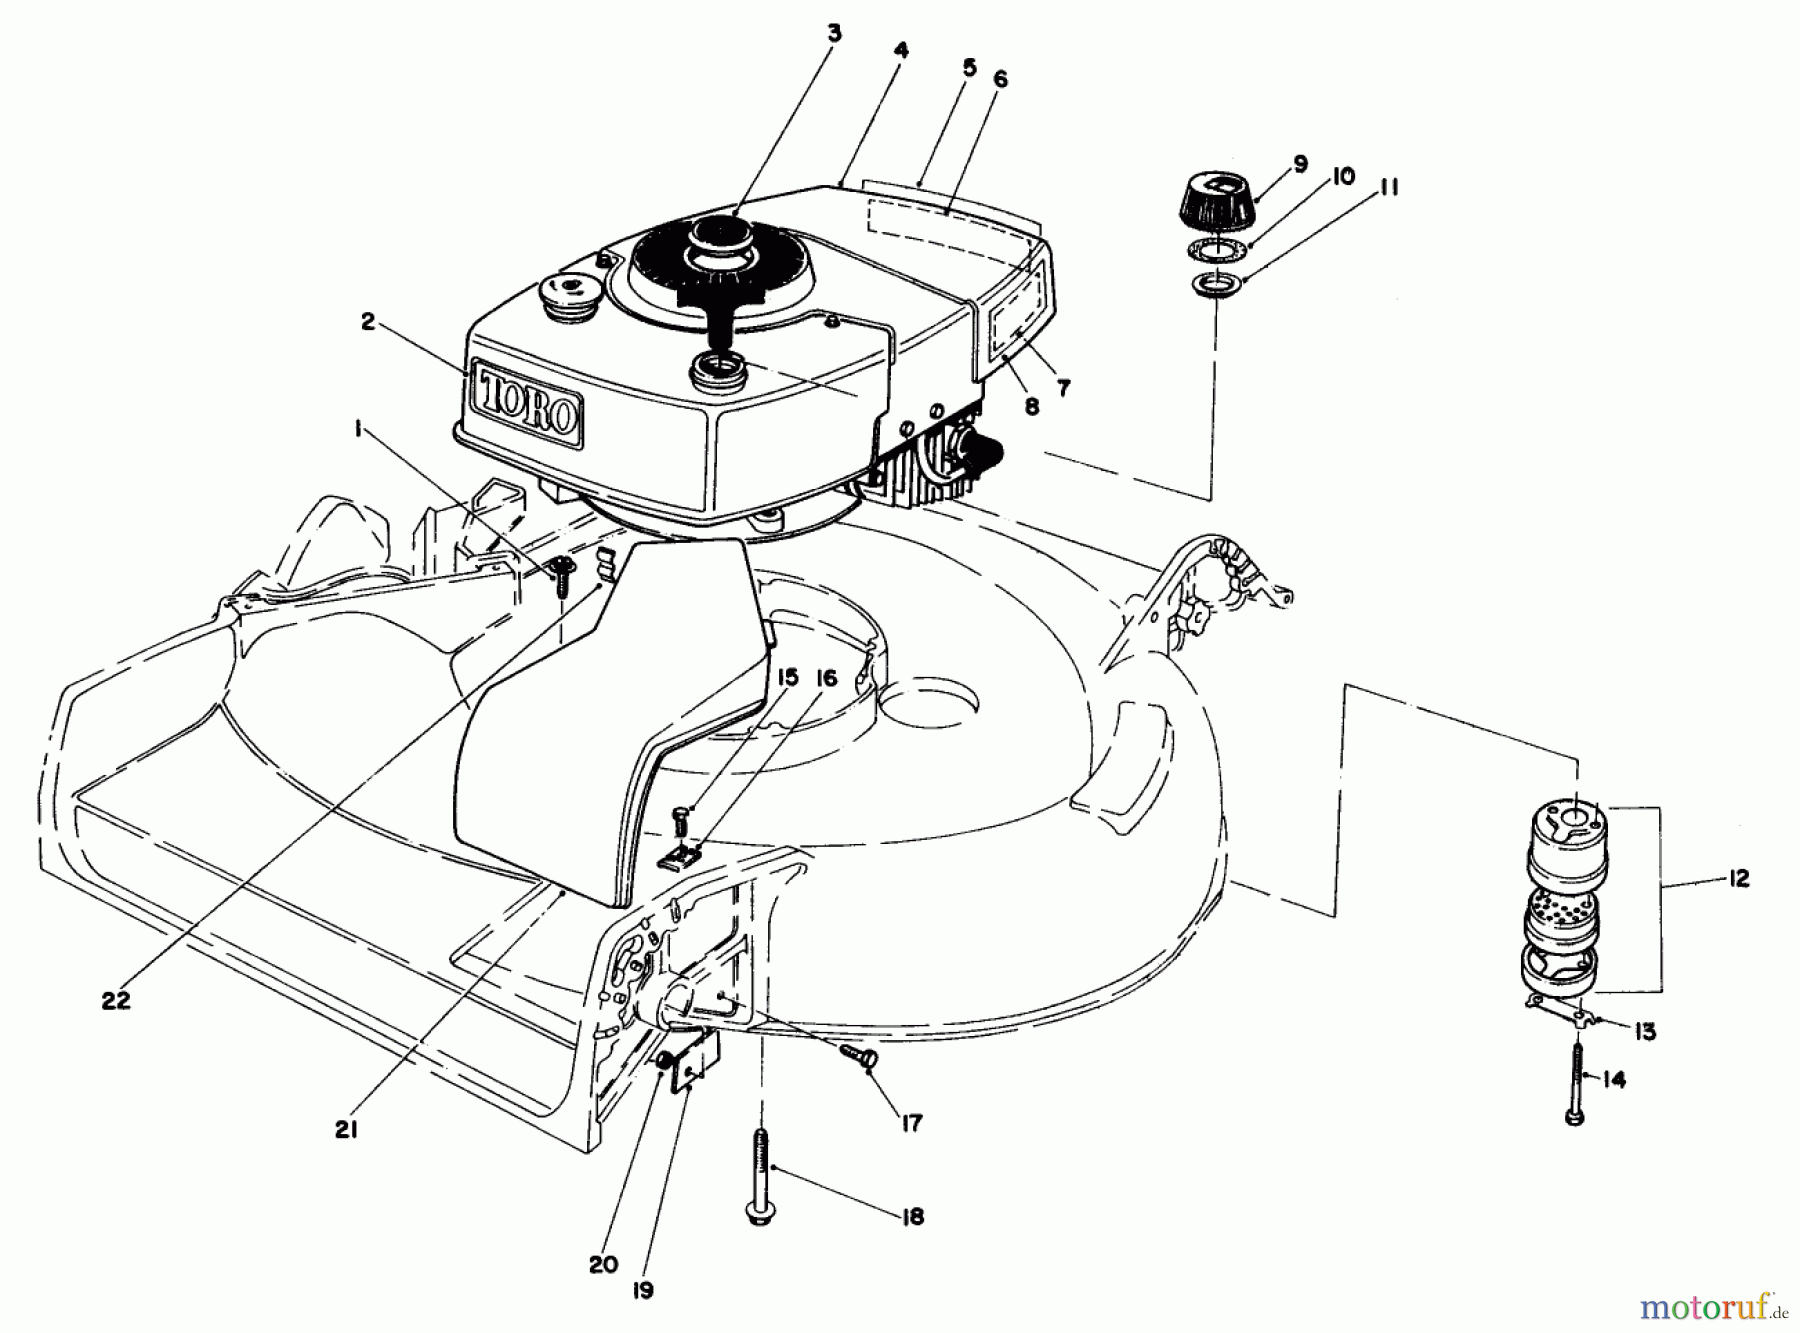  Toro Neu Mowers, Walk-Behind Seite 1 16299 - Toro Lawnmower, 1984 (4000001-4999999) ENGINE ASSEMBLY